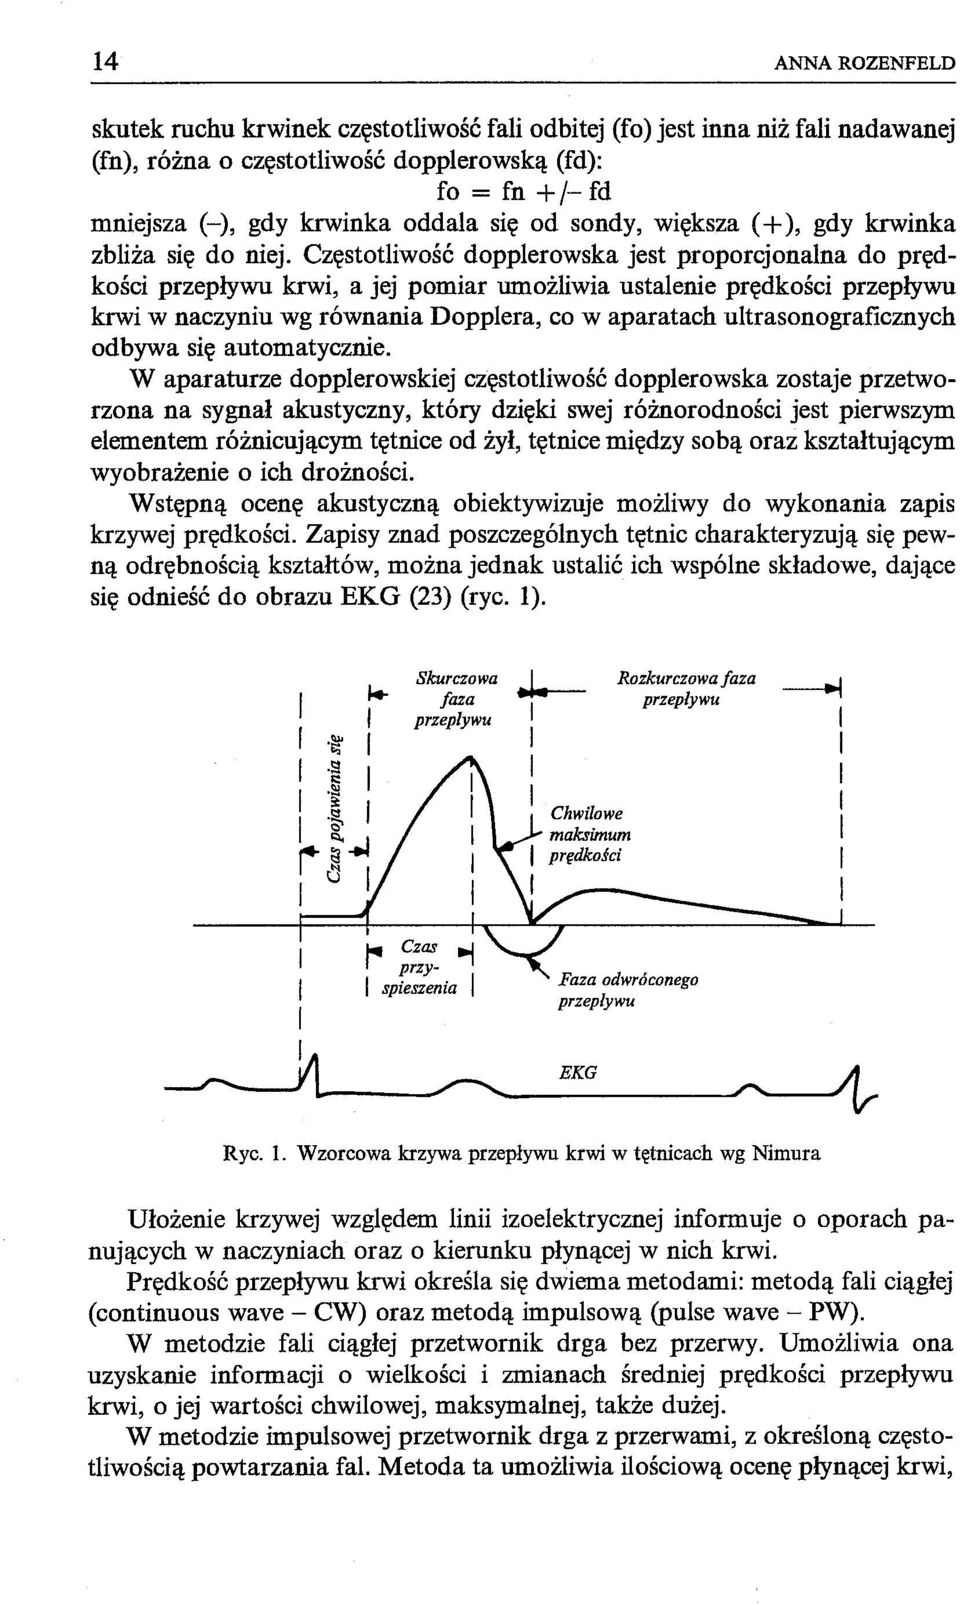 Częstotliwość dopplerowska jest proporcjonalna do prędkości przepływu krwi, a jej pomiar umożliwia ustalenie prędkości przepływu krwi w naczyniu wg równania Dopplera, co w aparatach